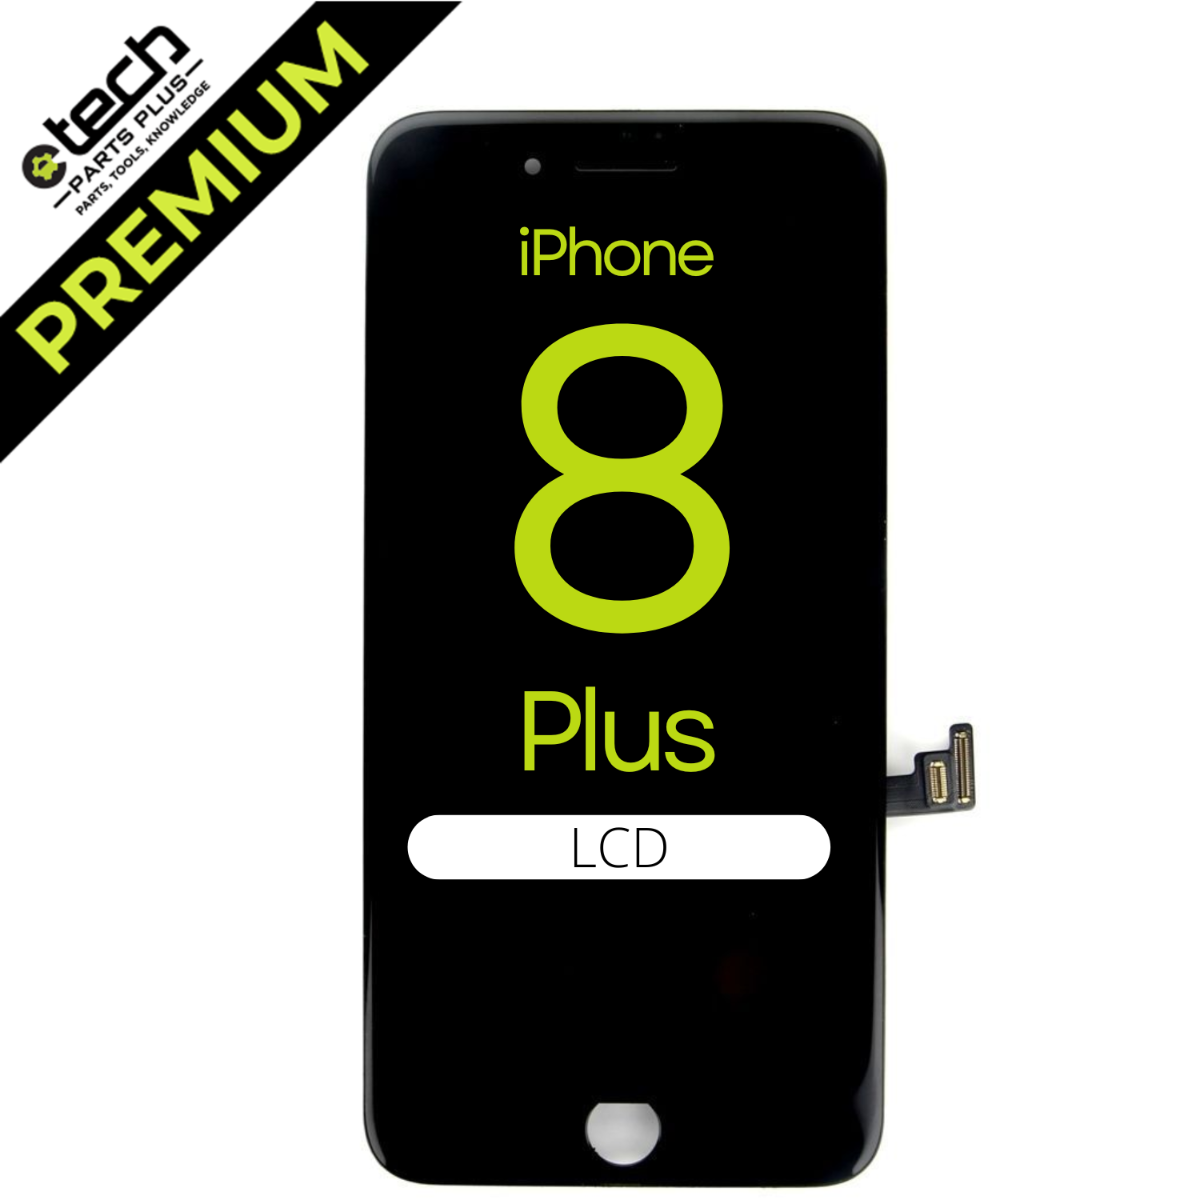 Connecteur FPC batterie iPhone 8 qualité premium